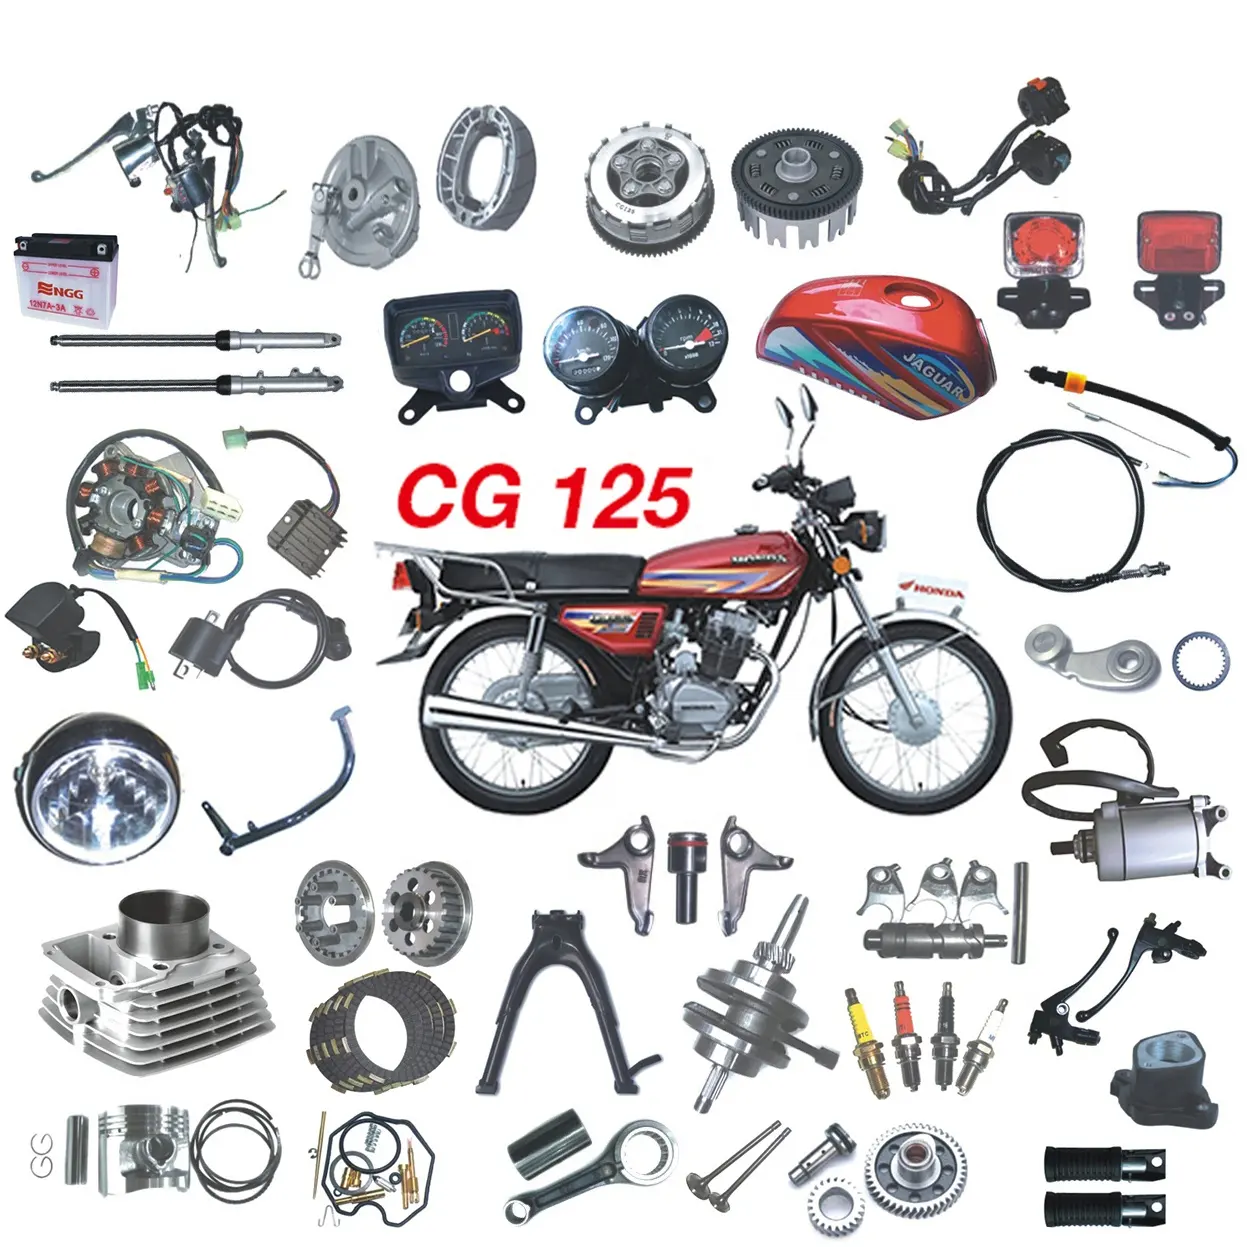 Whosale all motorcycle parts CG125cc motorcycle spare parts and accesorios y Vende todos repuestos de motocicleta CG125